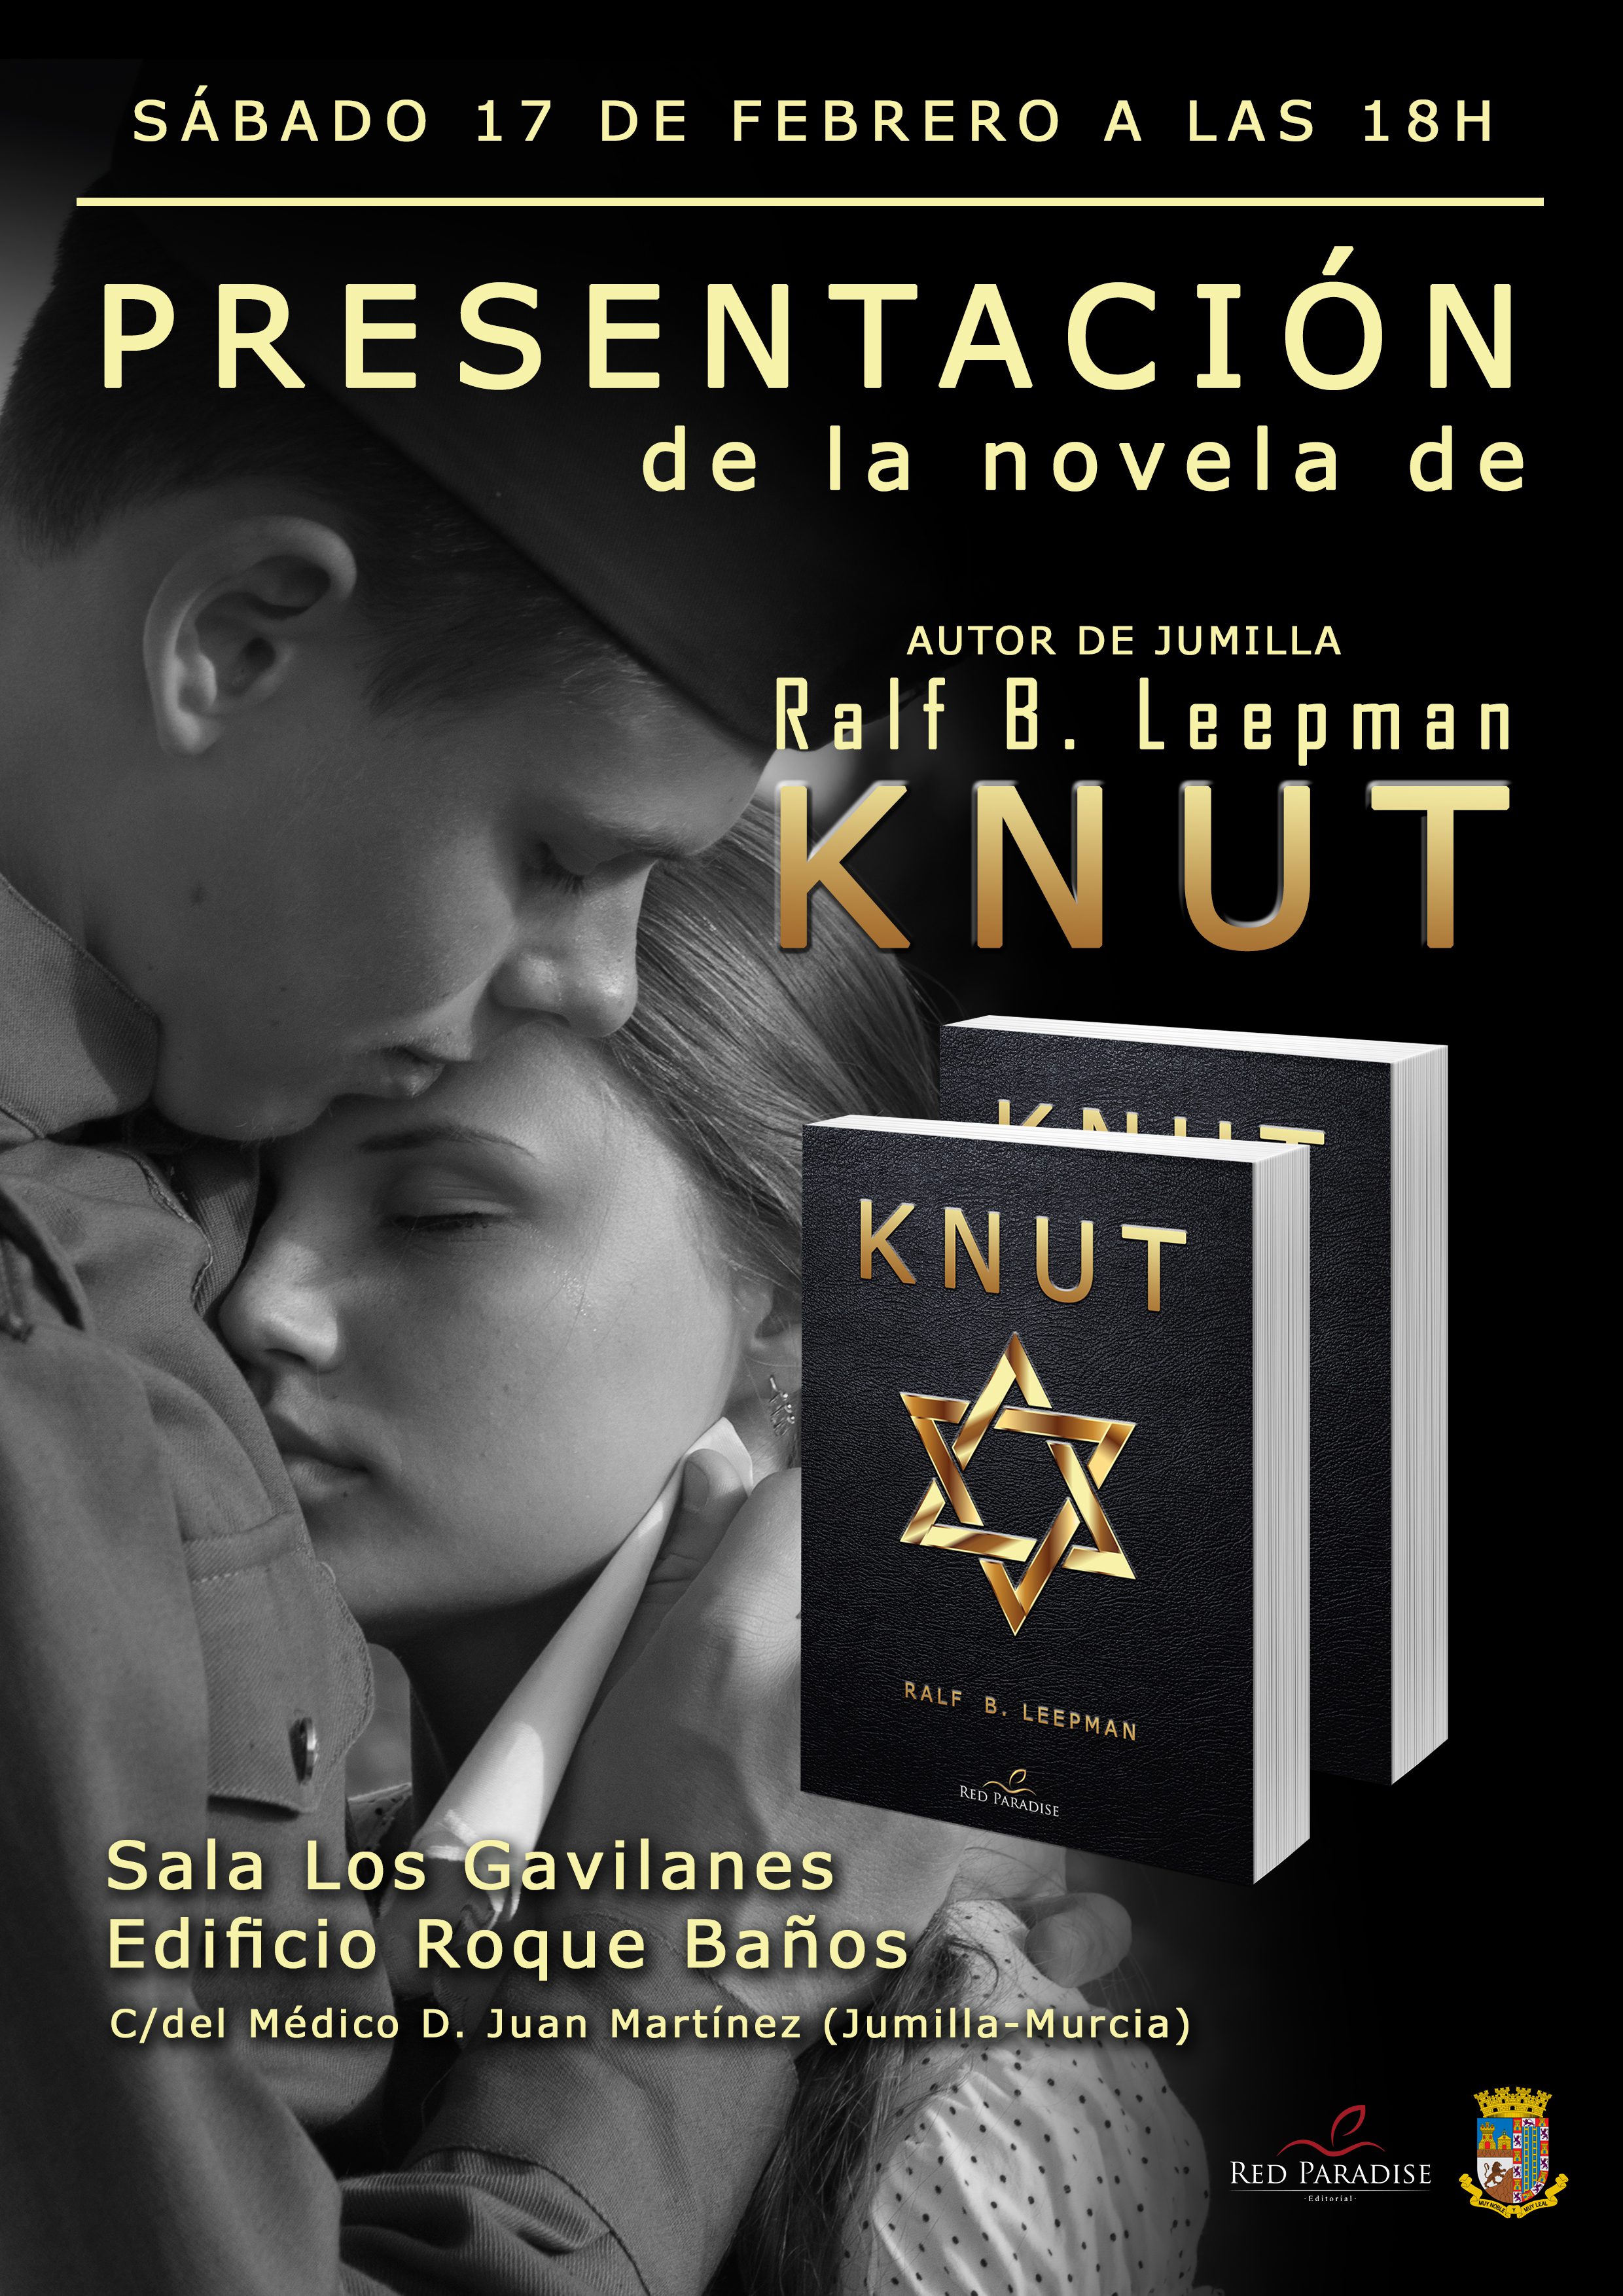 El escritor Ralf B. Leepman presentará este sábado en el Centro Roque Baños su último libro titulado “Knut”